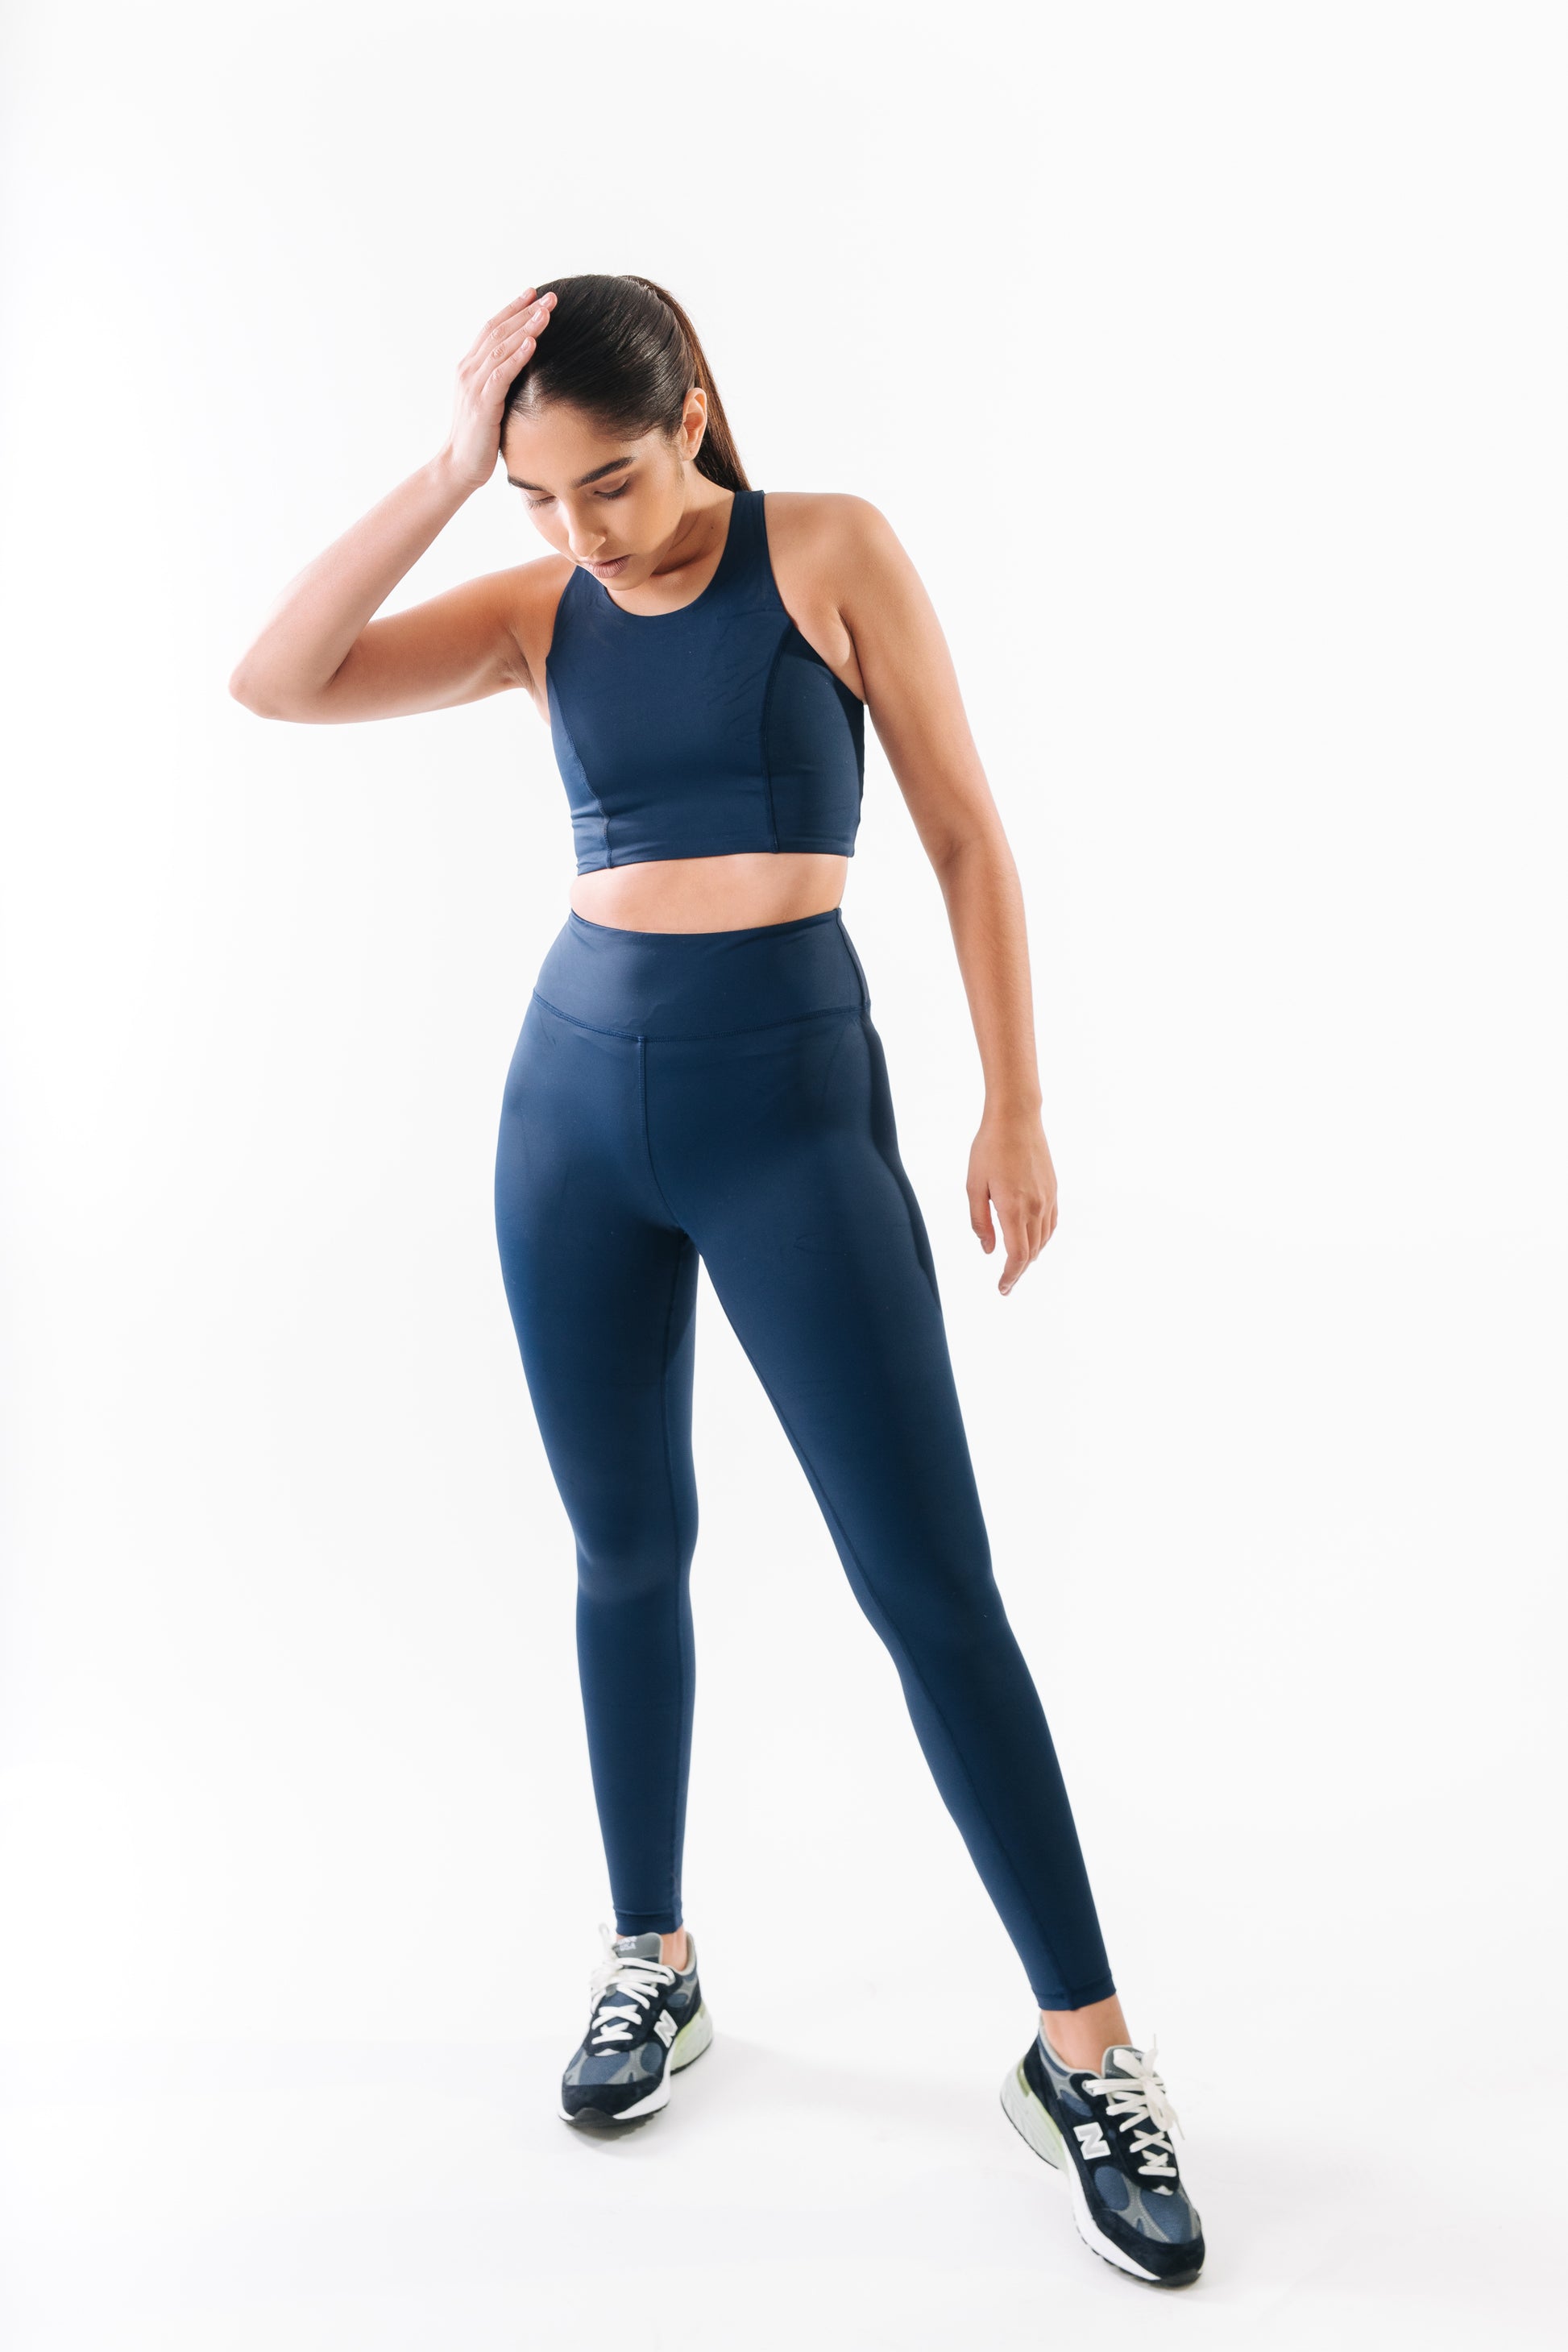 Women's sports leggings  Sustainable feminine sportswear